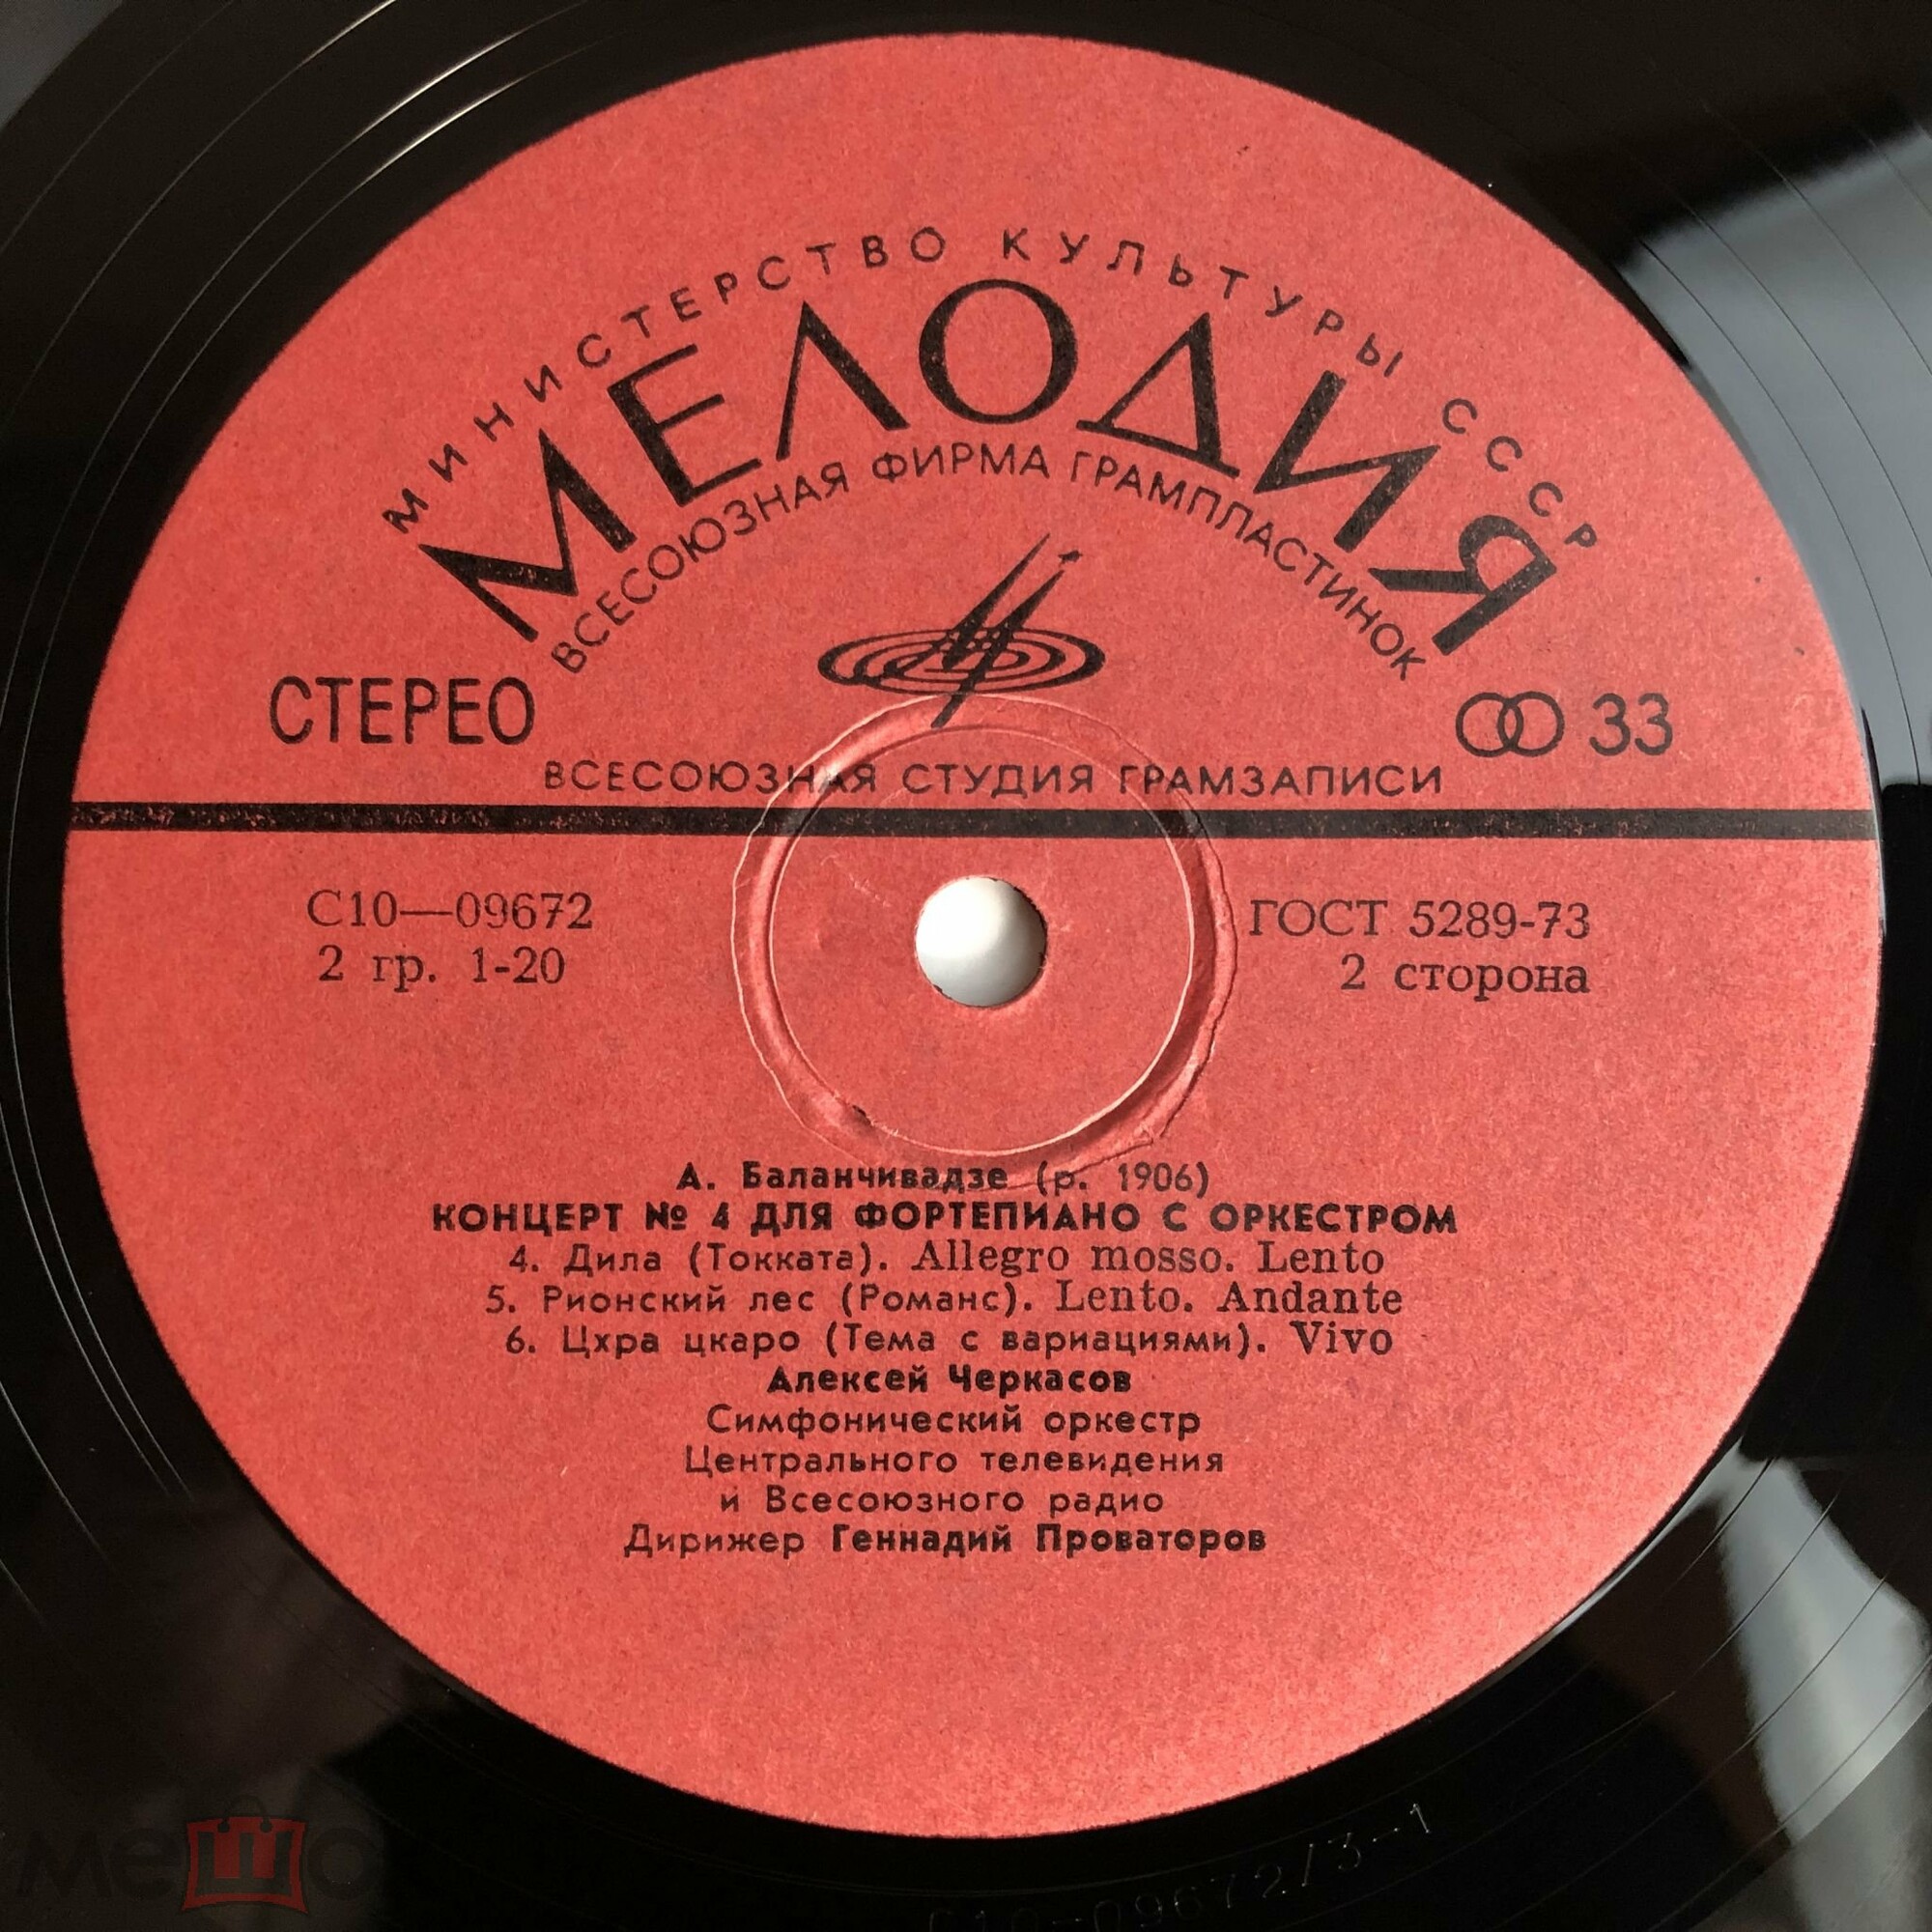 A. БАЛАНЧИВАДЗЕ (1906): Концерт № 4 для ф-но с оркестром (А. Черкасов)